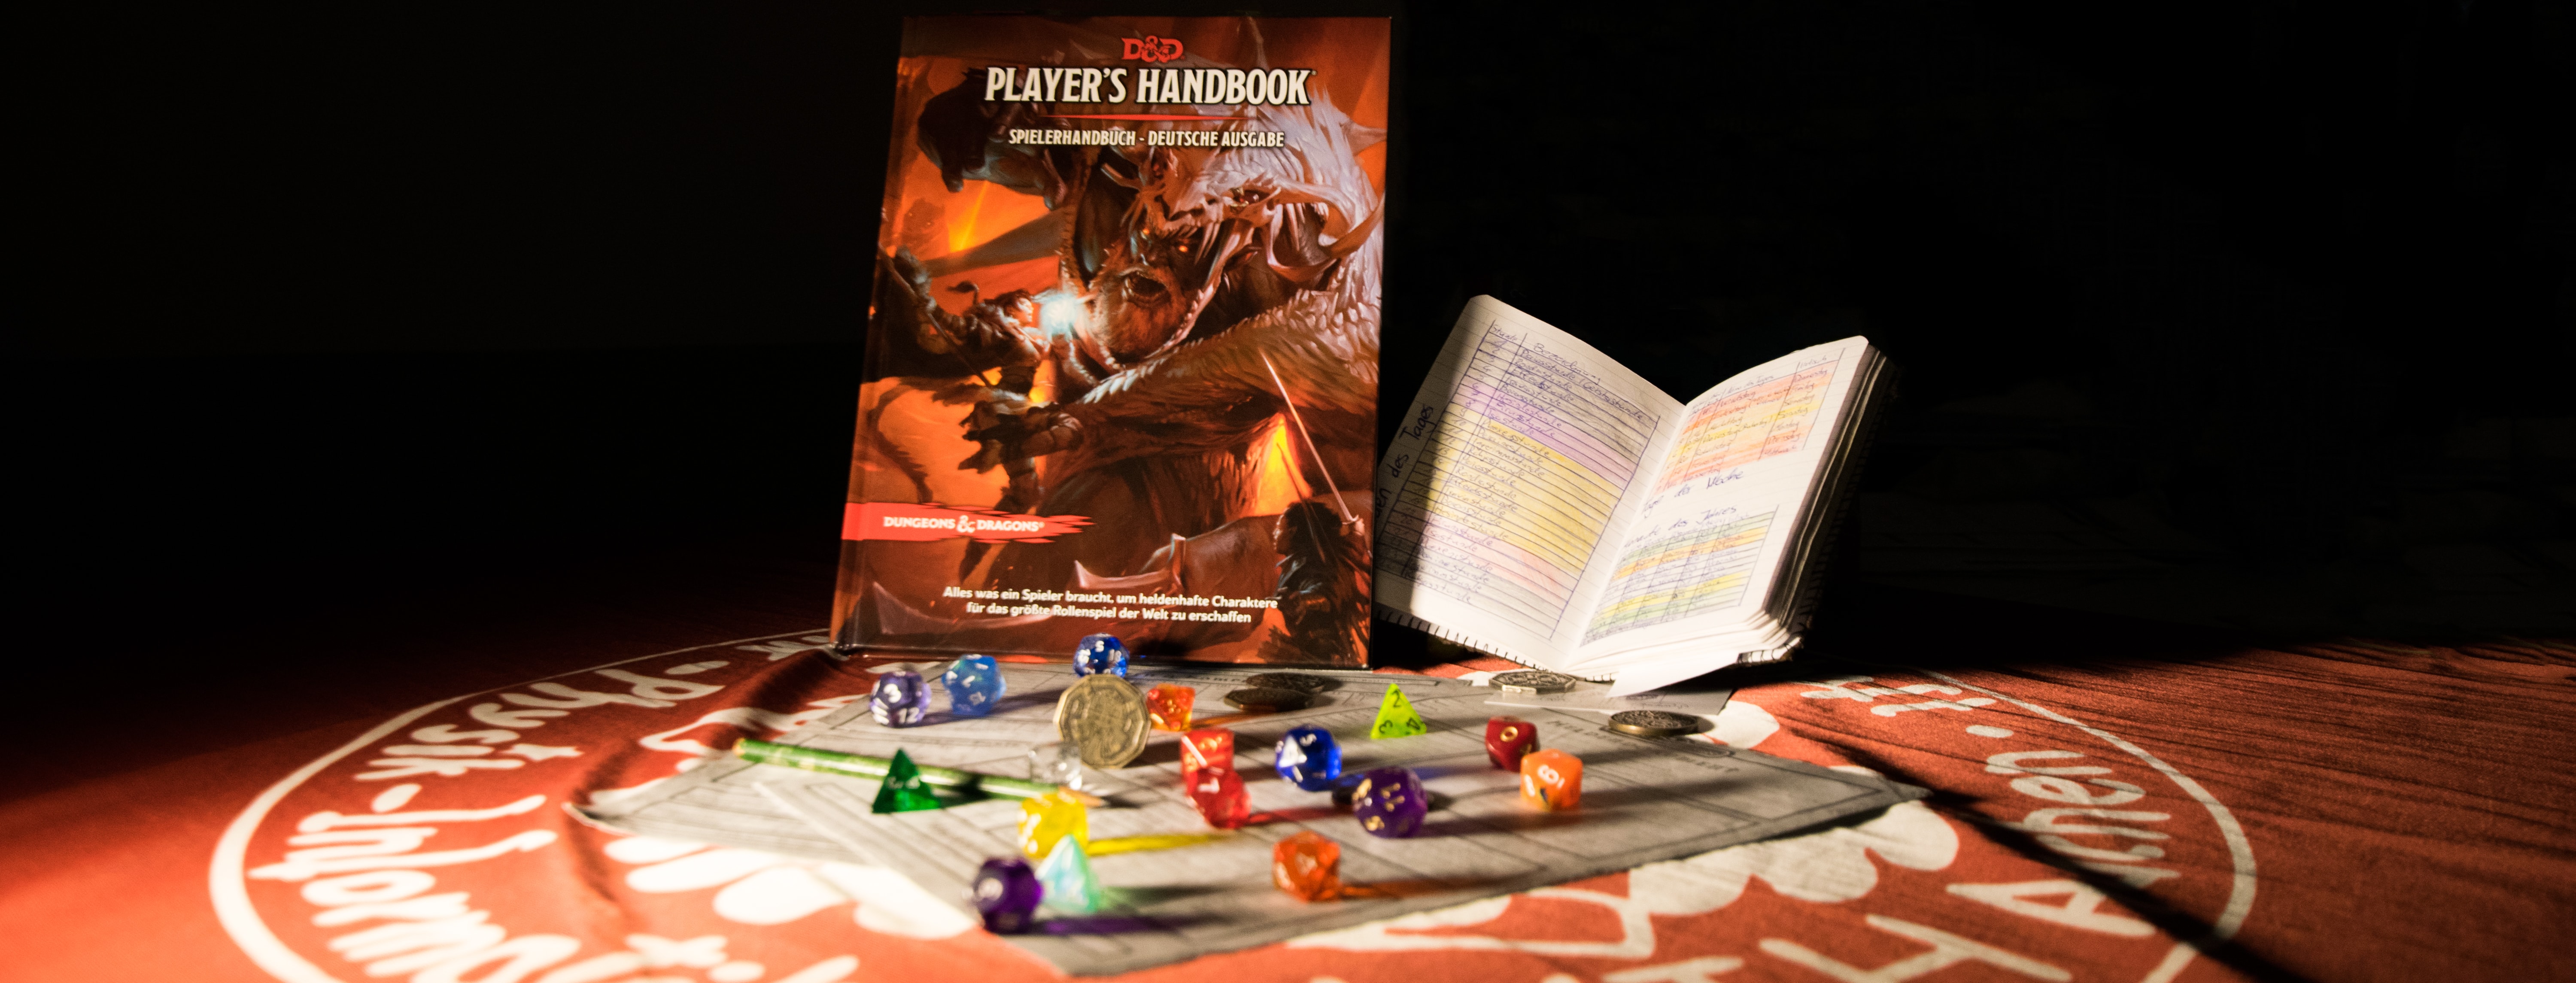 Symbolbild Rollenspielabend: Ein Regelwerk, Würfel und ein aufgeschlagenes Buch auf einem Tisch.